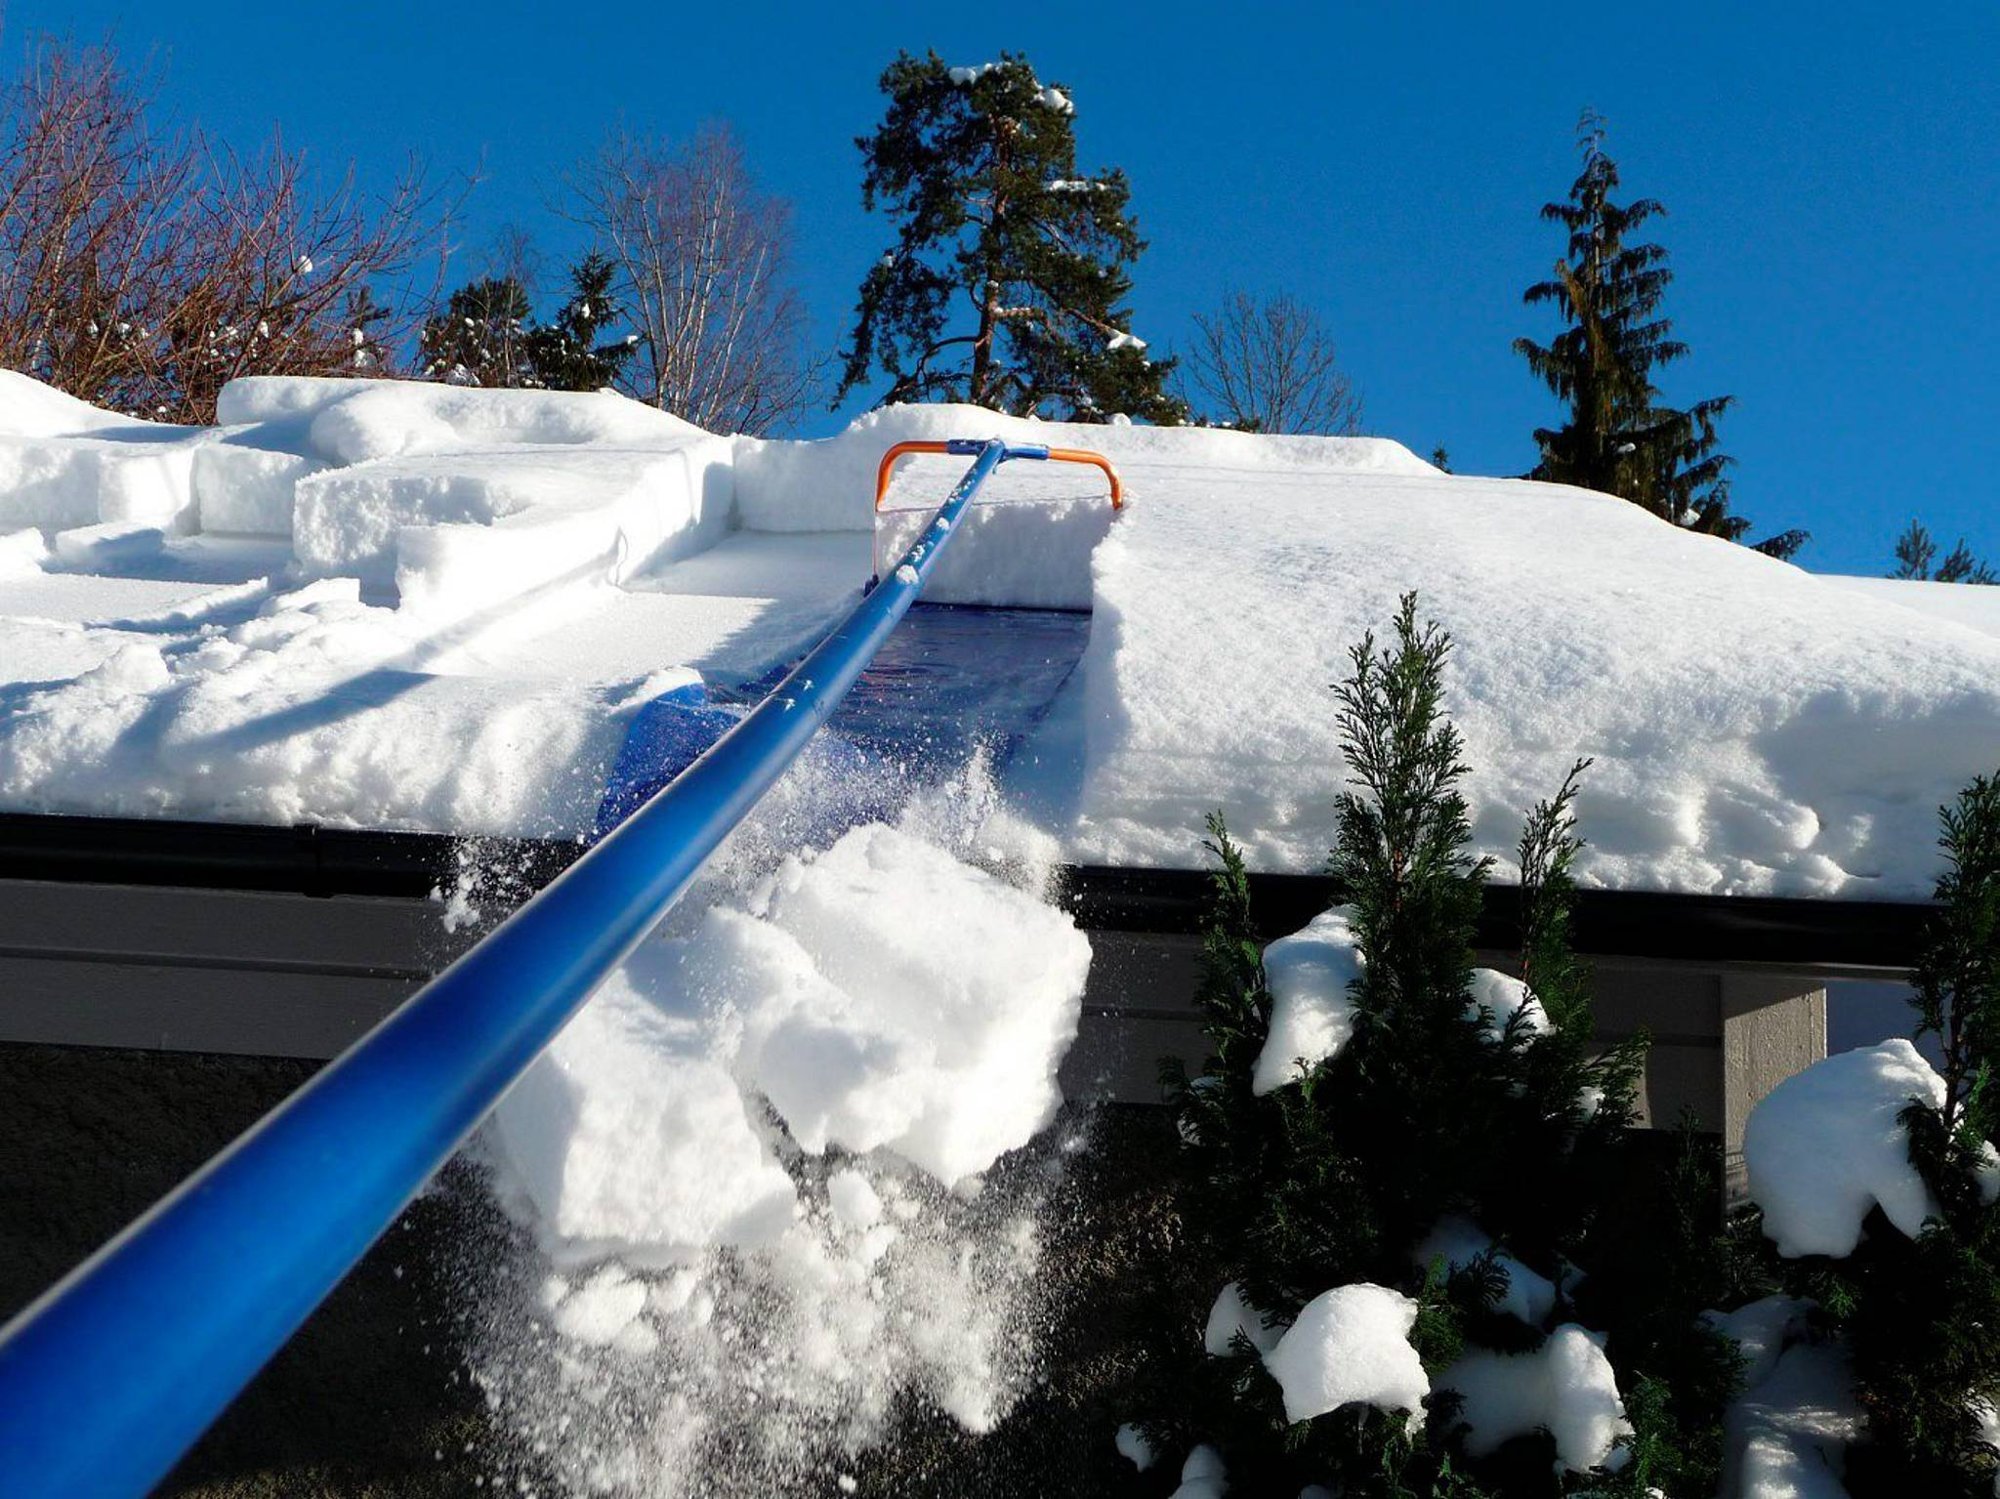 Цена очистки крыши от снега. Скребок для уборки снега с крыши с тканью 1,9-6,3м 11646. Скребок для уборки снега с крыши с тканью 1,9-6,3м 11646 дракон. Скребок для снега с крыши с тканью 1.9-6.3м 11646. Скребок для уборки снега с крыши скрепер с тканью "лавина" 1,9-6,3м 11646.